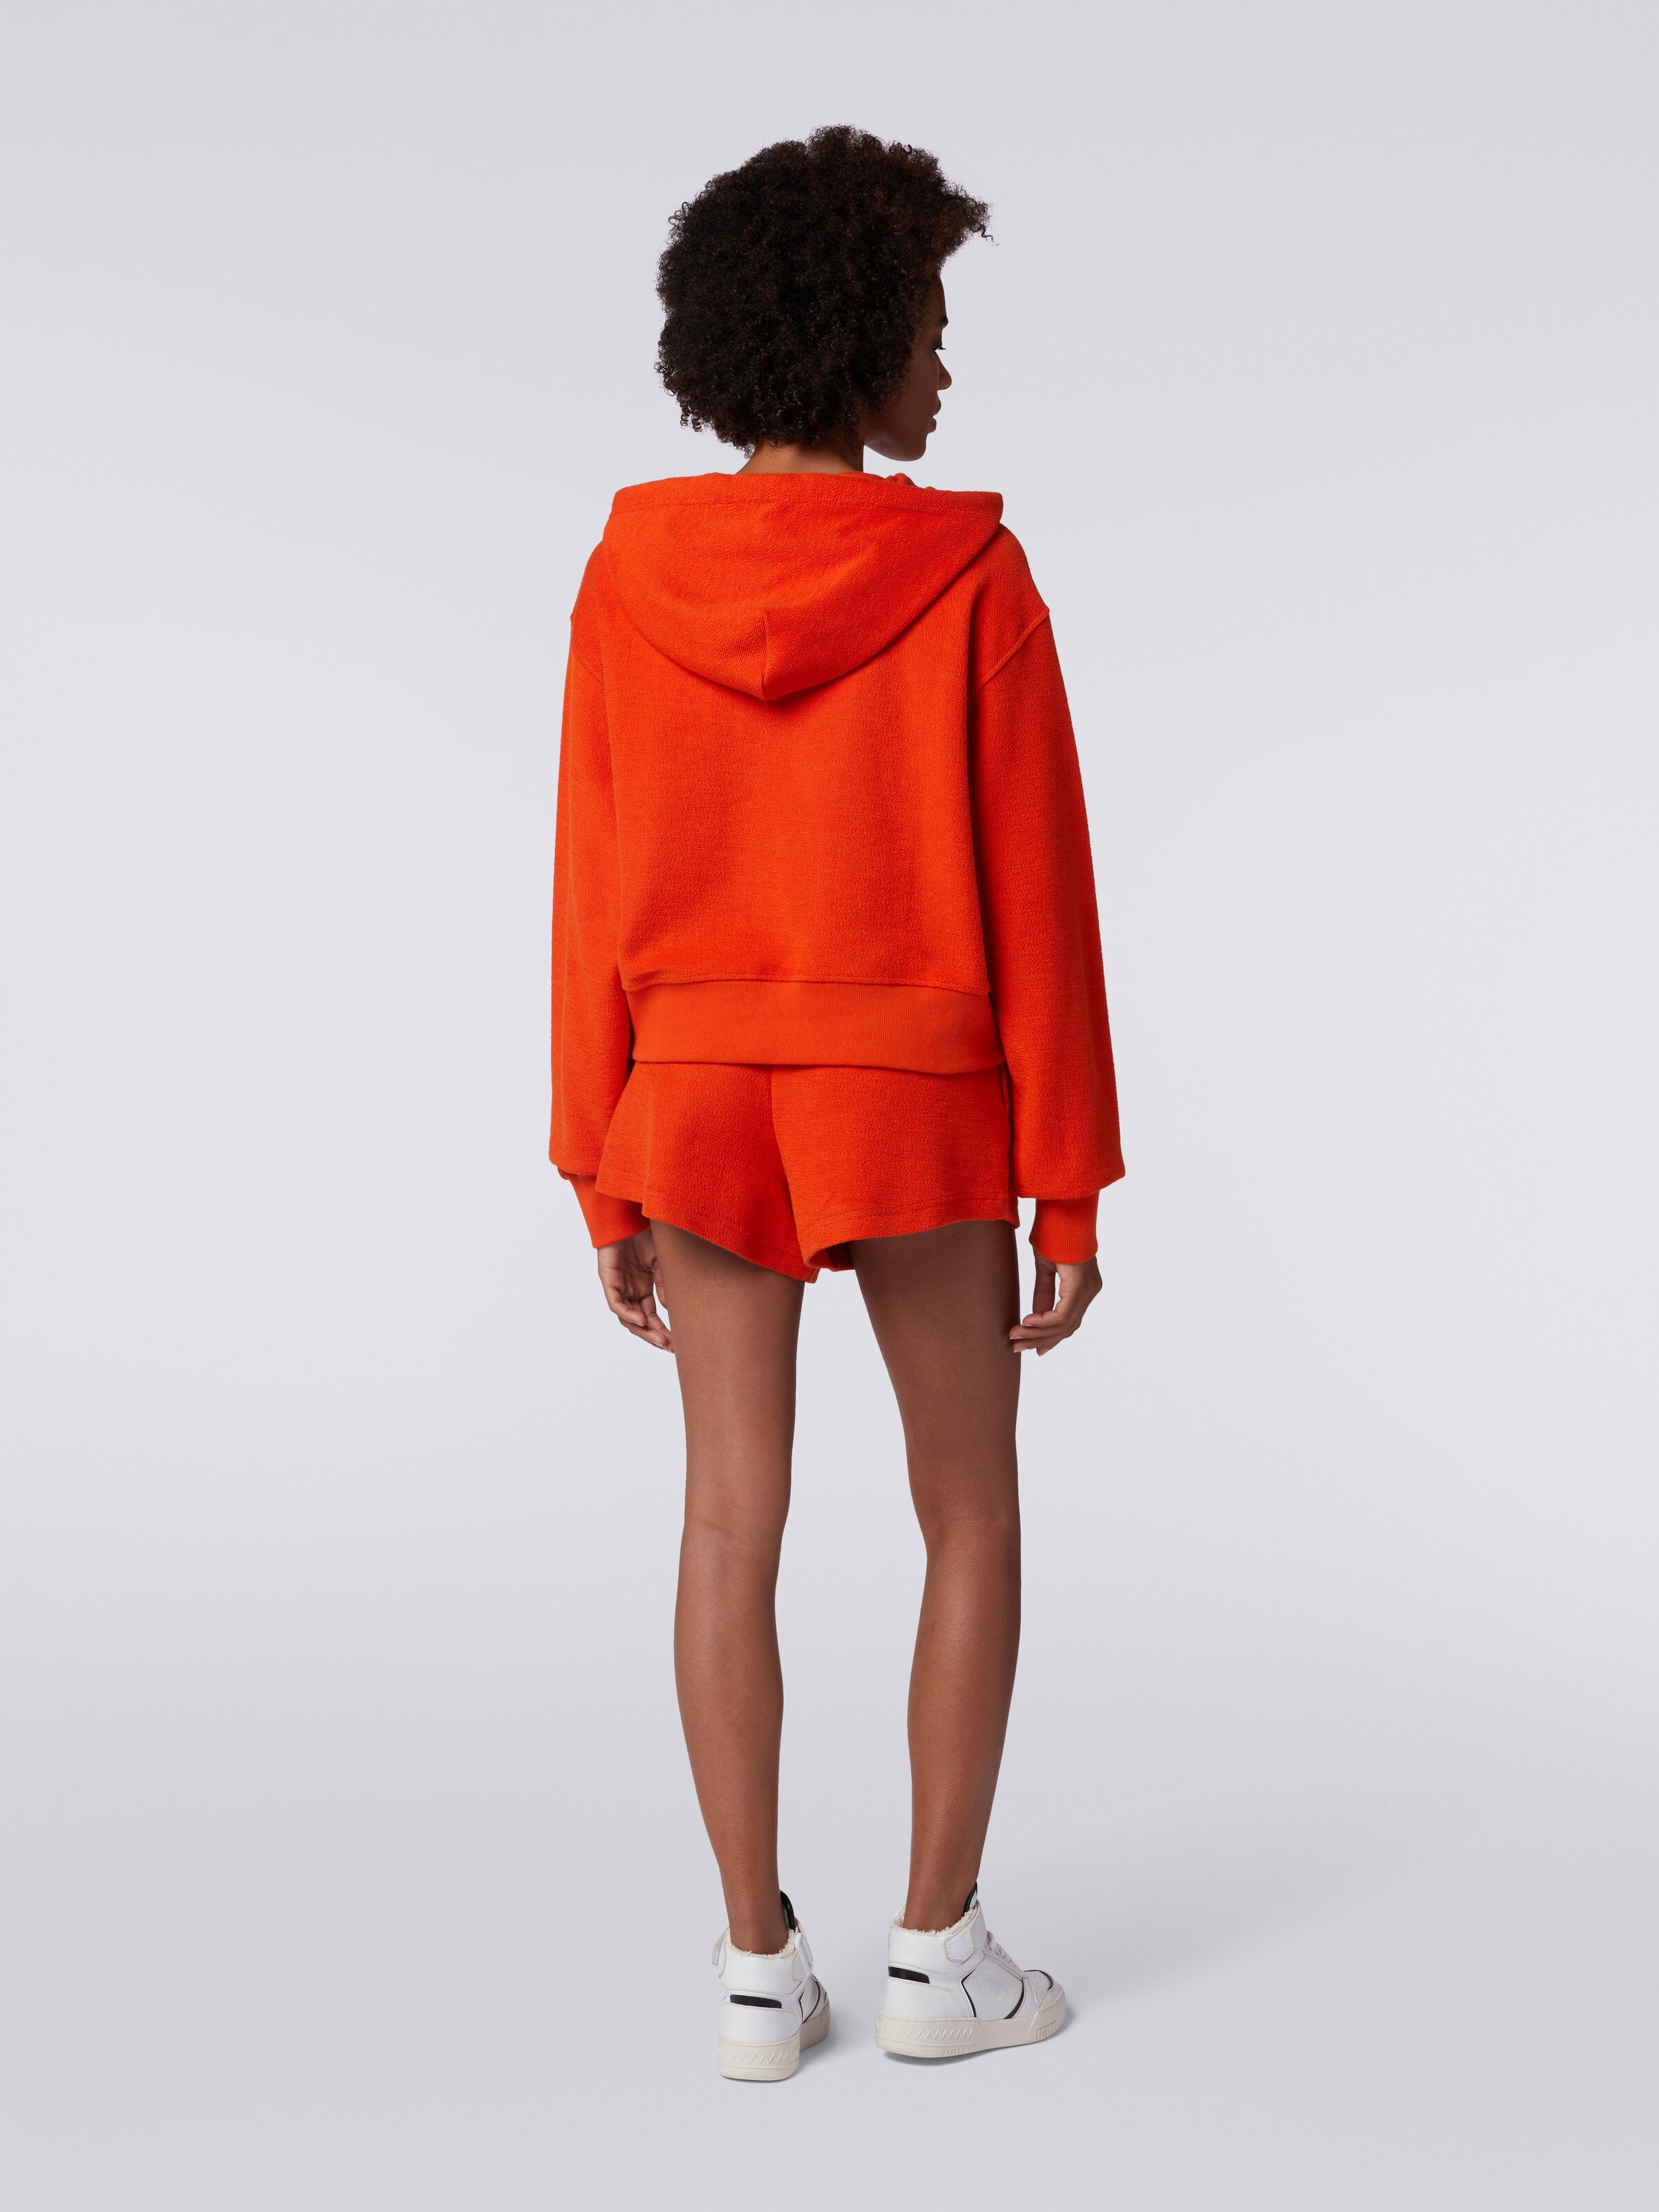 hood logo Crop and brushed with fleece Orange | Missoni sweatshirt